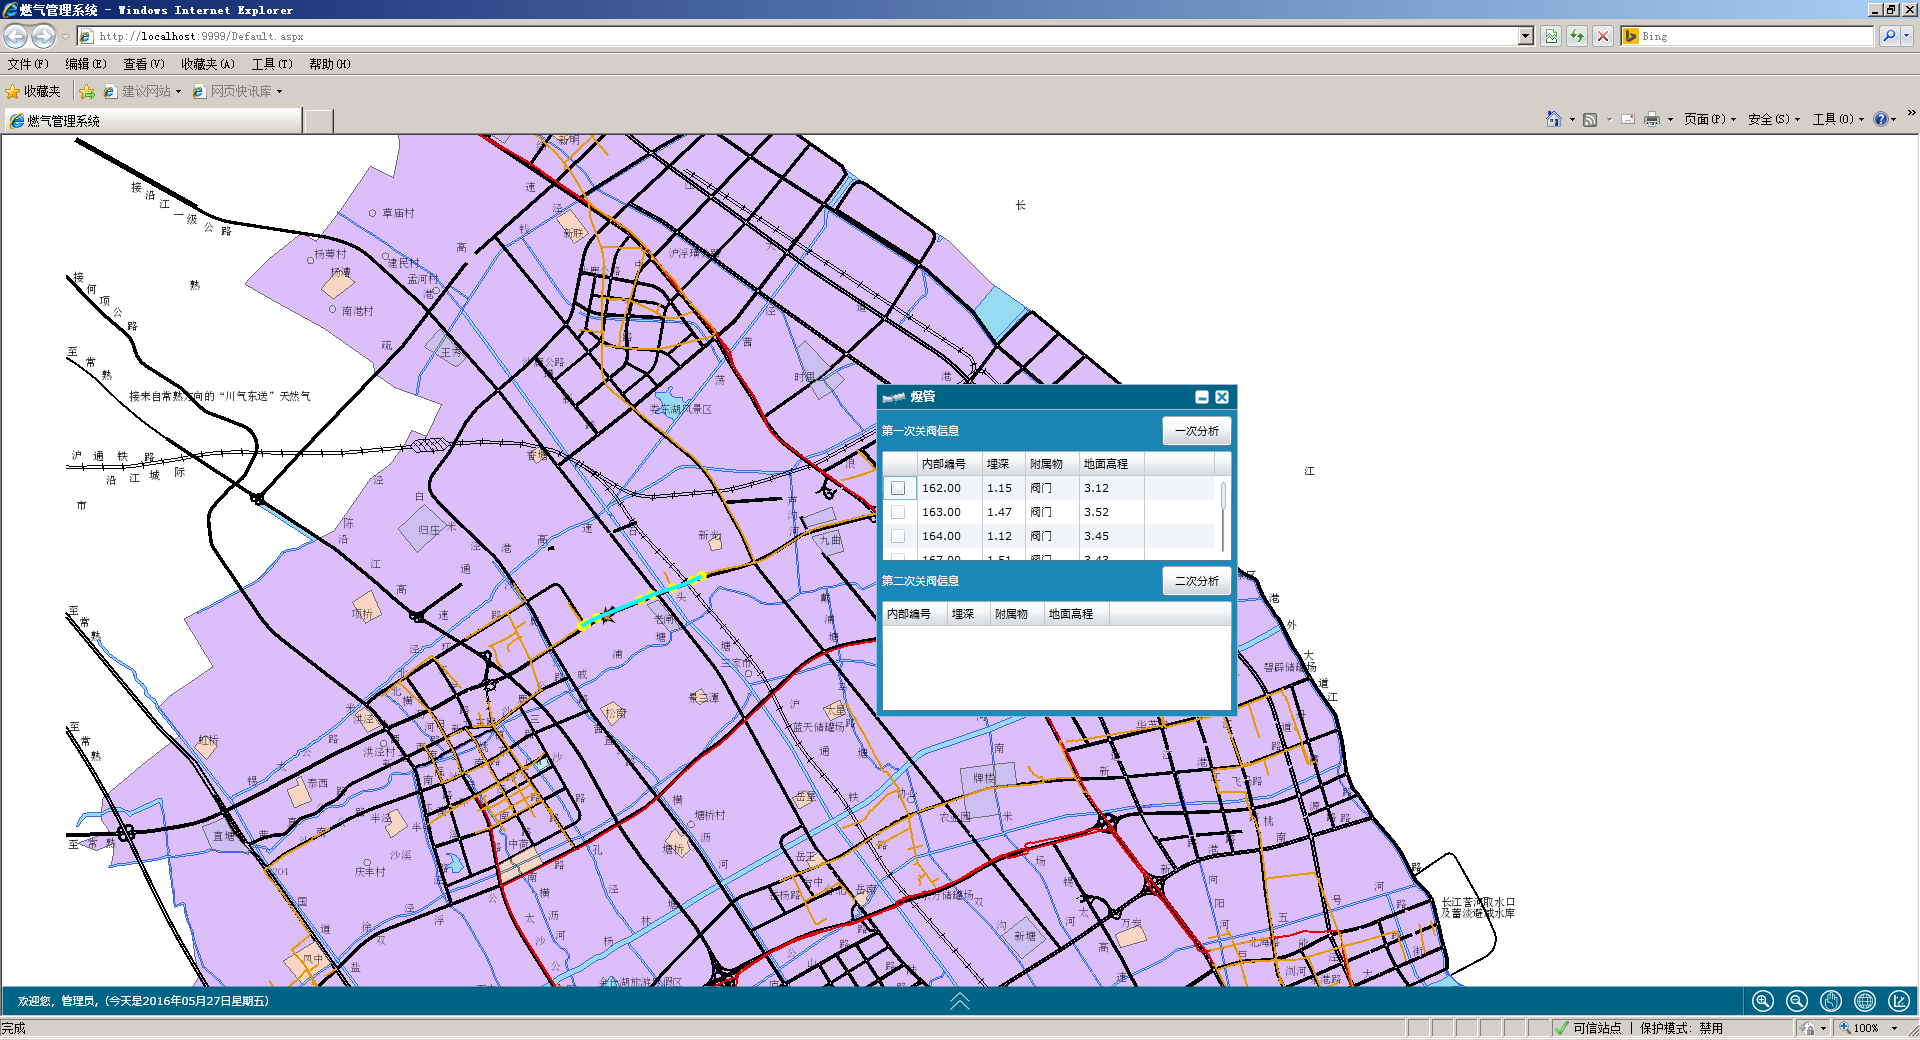 城市管网地理信息管理系统（GIS）